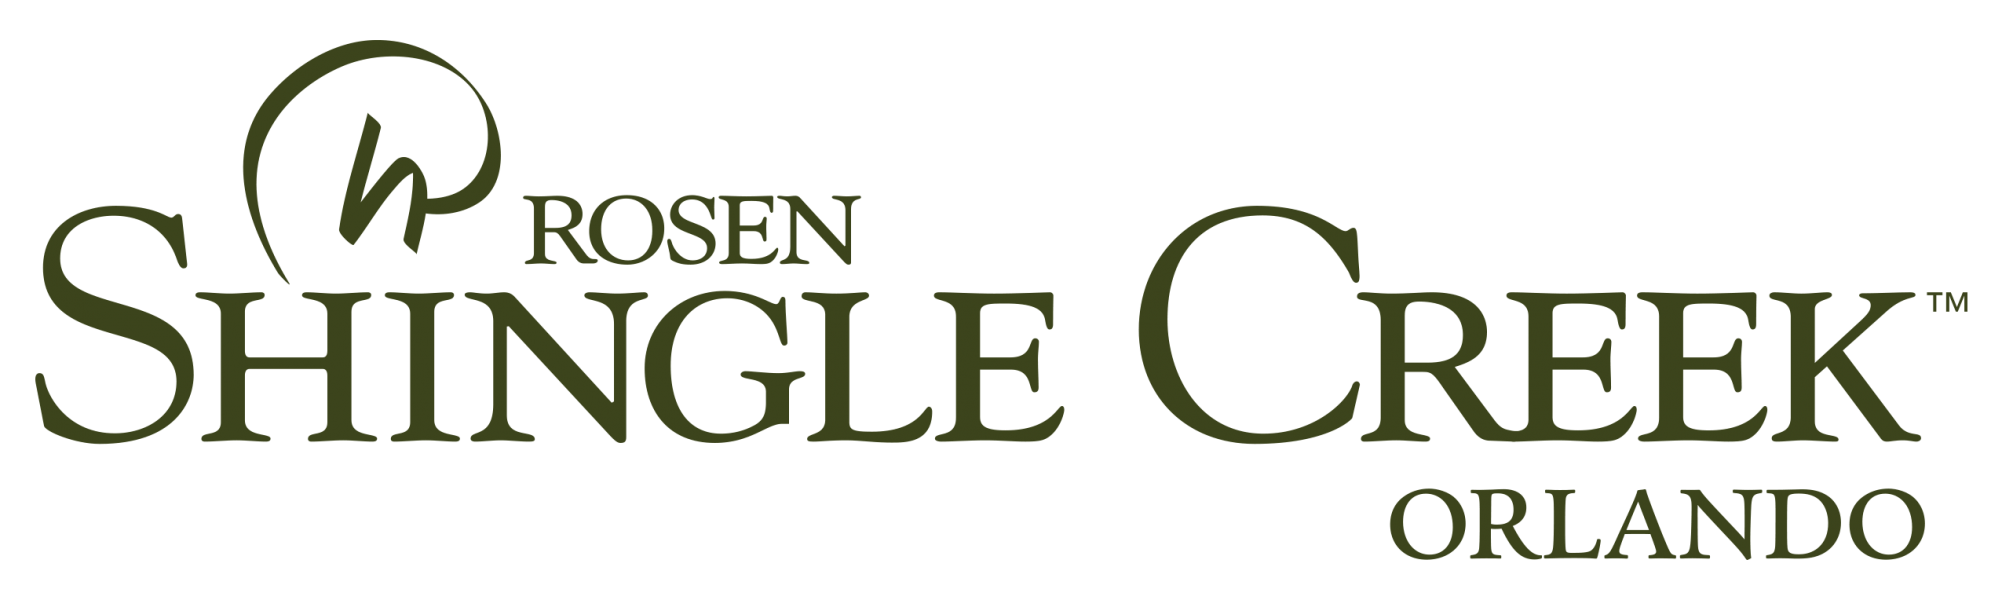 Rosen Logo - Logos | Rosen Shingle Creek®